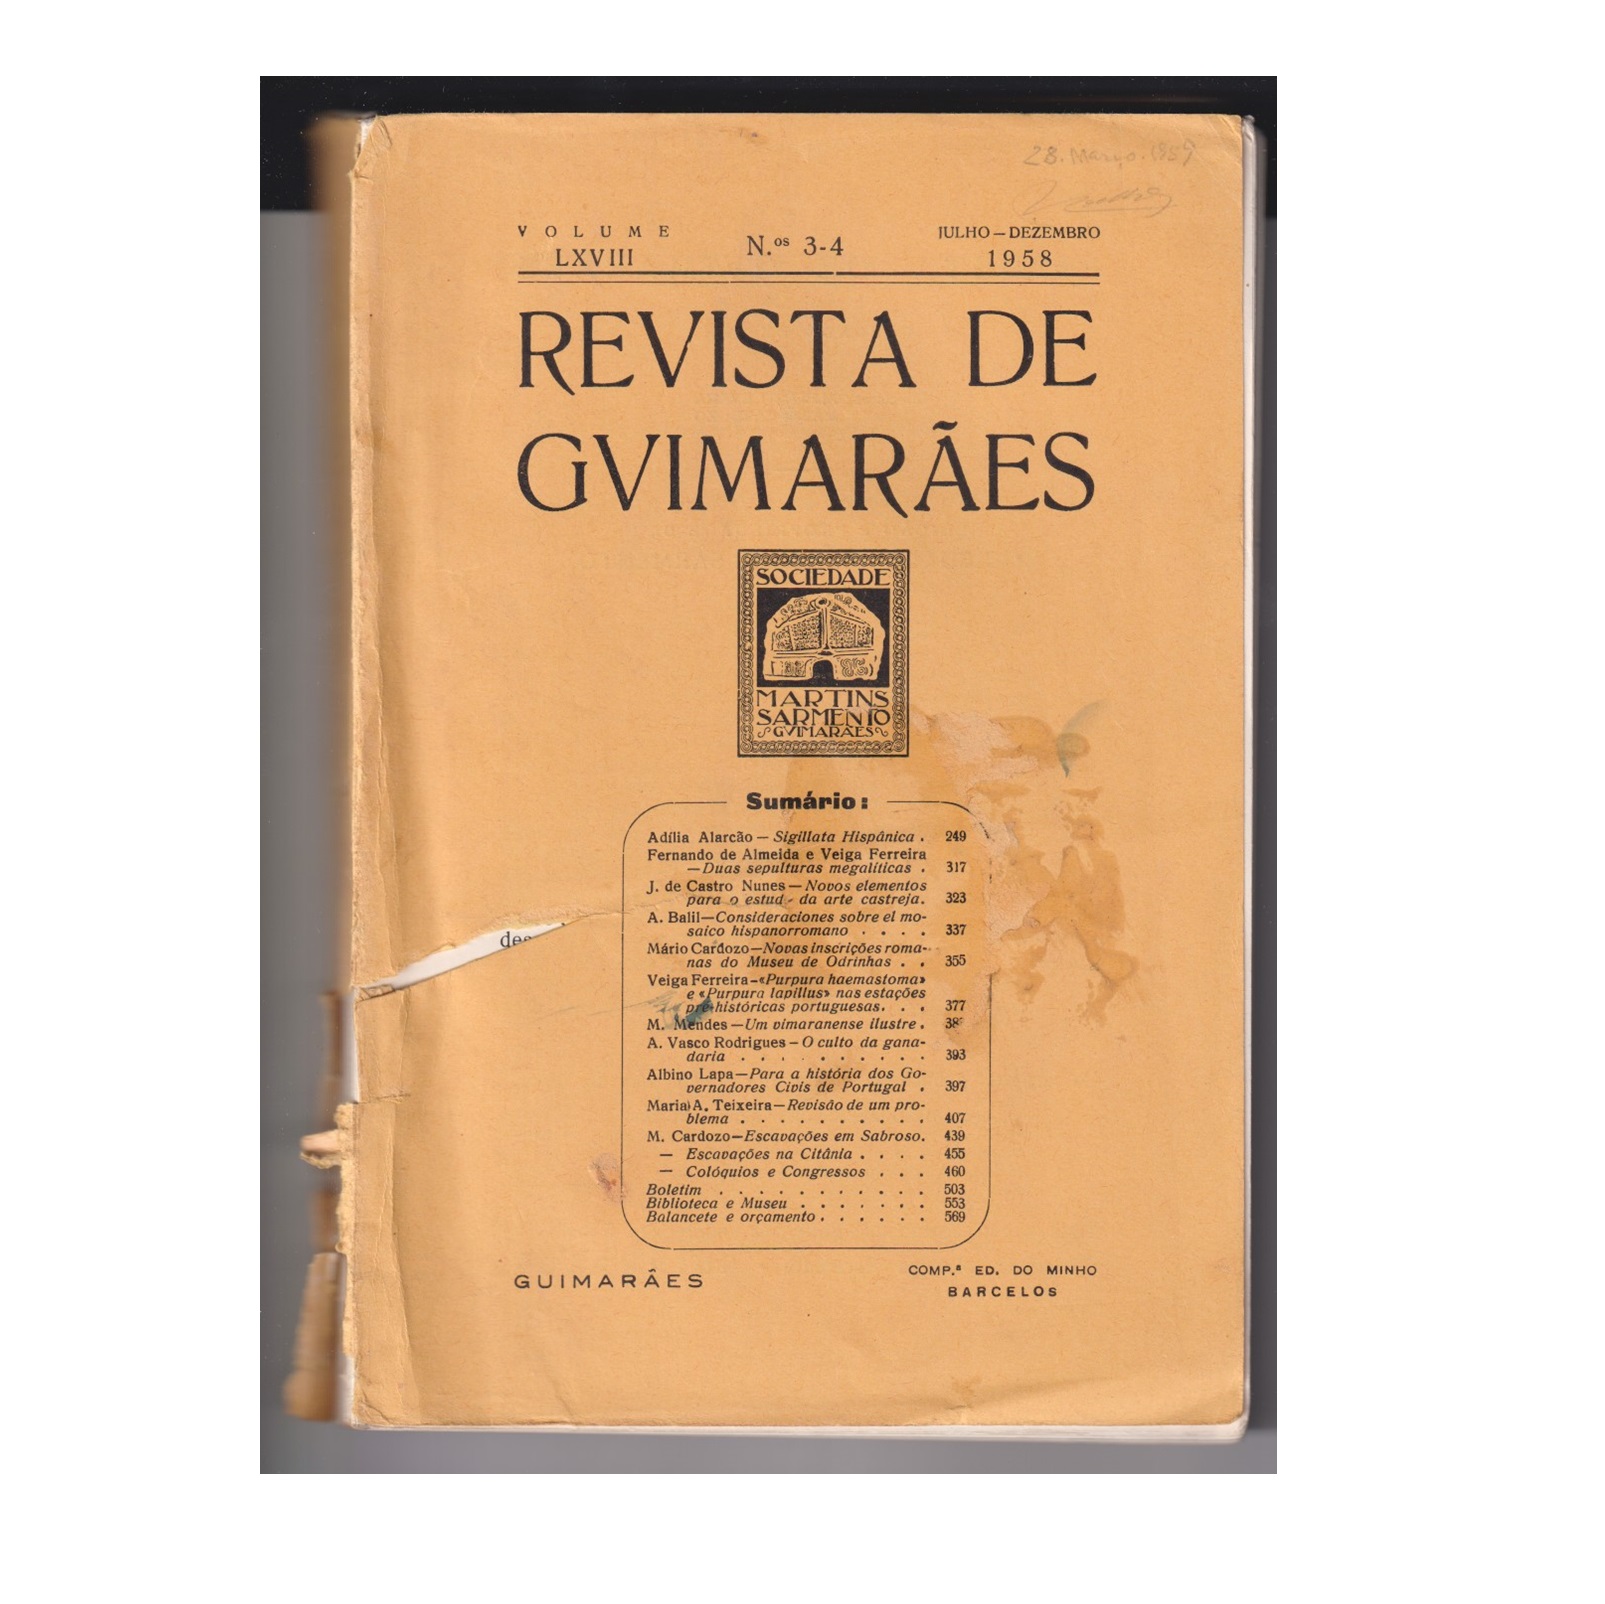 REVISTA DE GUIMARÃES. VOL. LXVIII. N.º 3-4, 1958